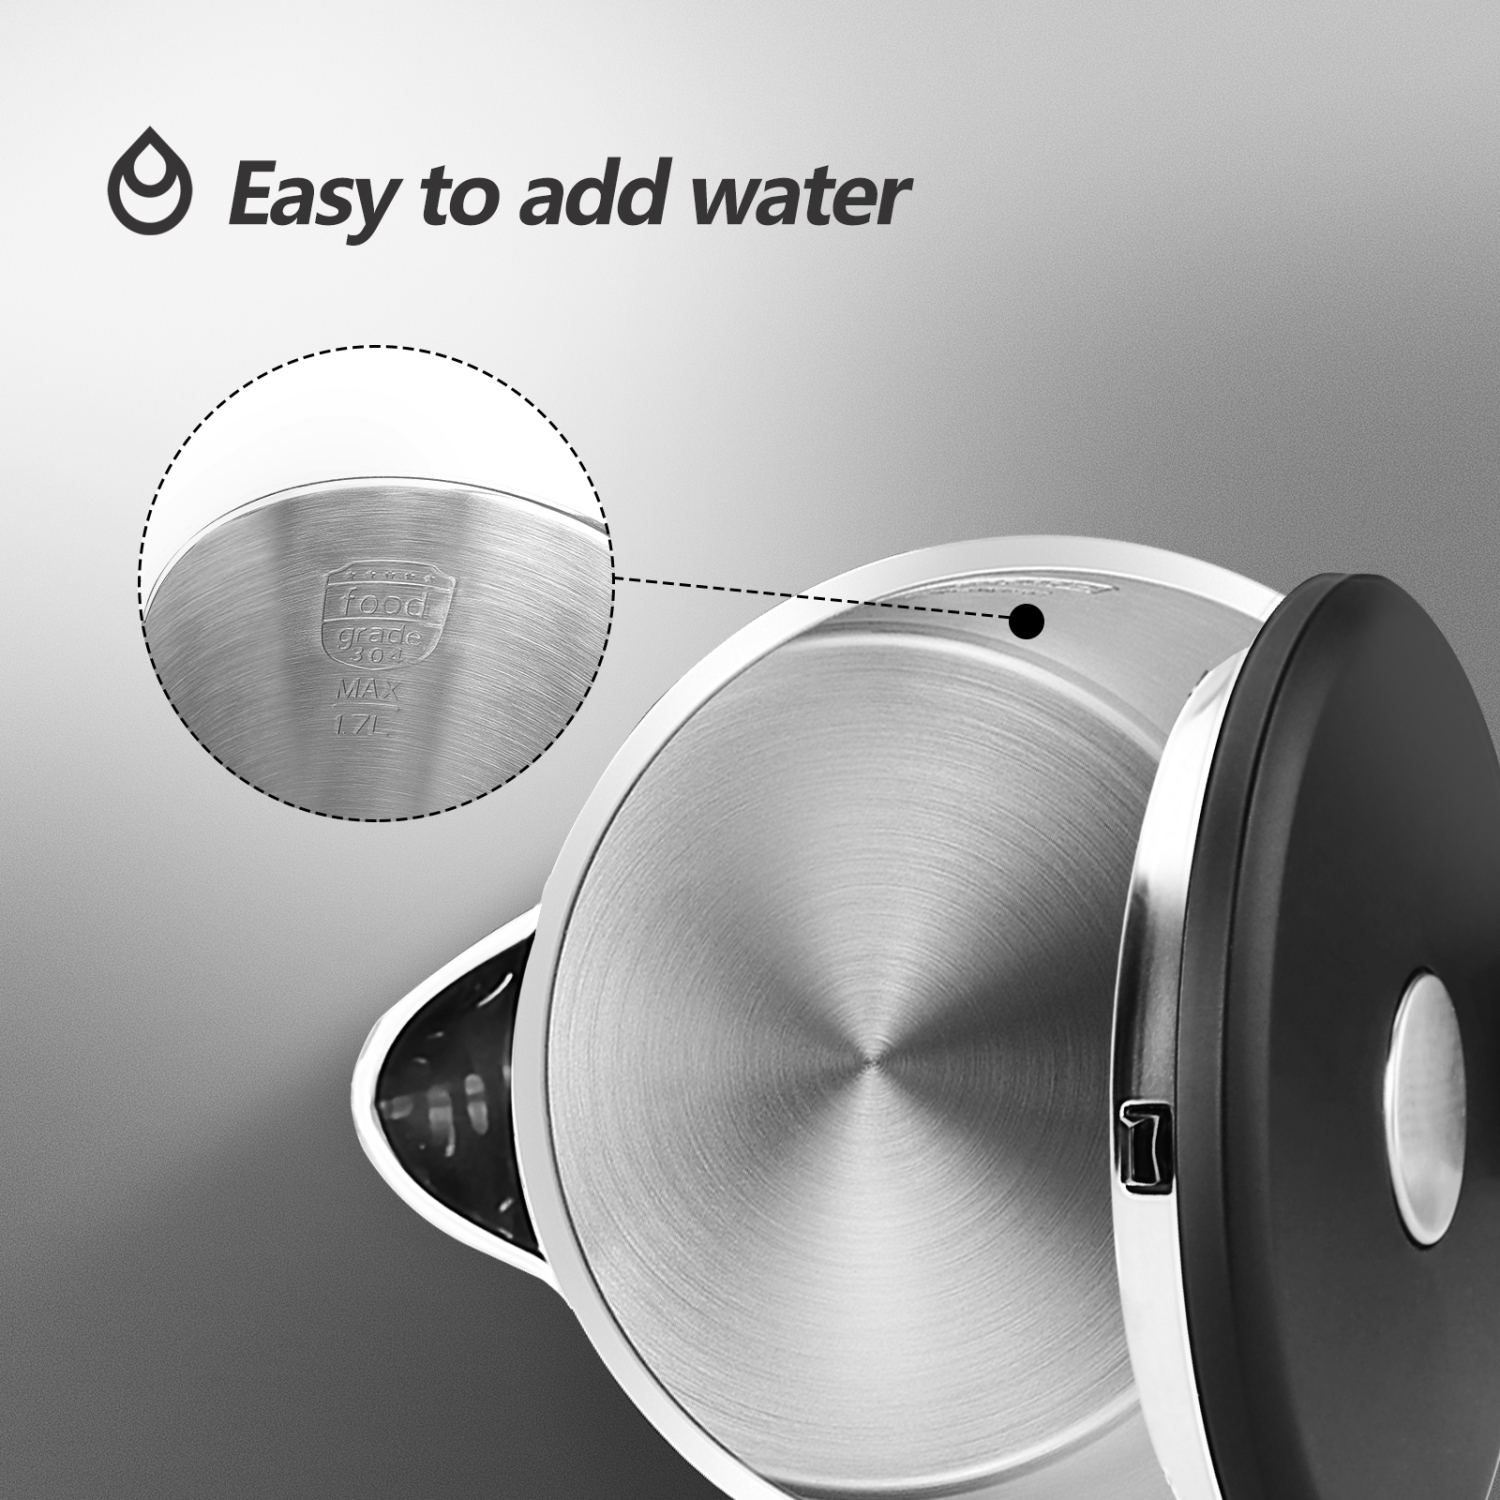 Aigostar Luster - Edelstahl Wasserkocher, 1,7 Liter Doppelwand Design,  Edelstahl Wasserkessel mit Automatischer Abschaltung, 2200W, Überhitzungsschutz, Schnellkochfunktion, BPA frei, leise, schwarz